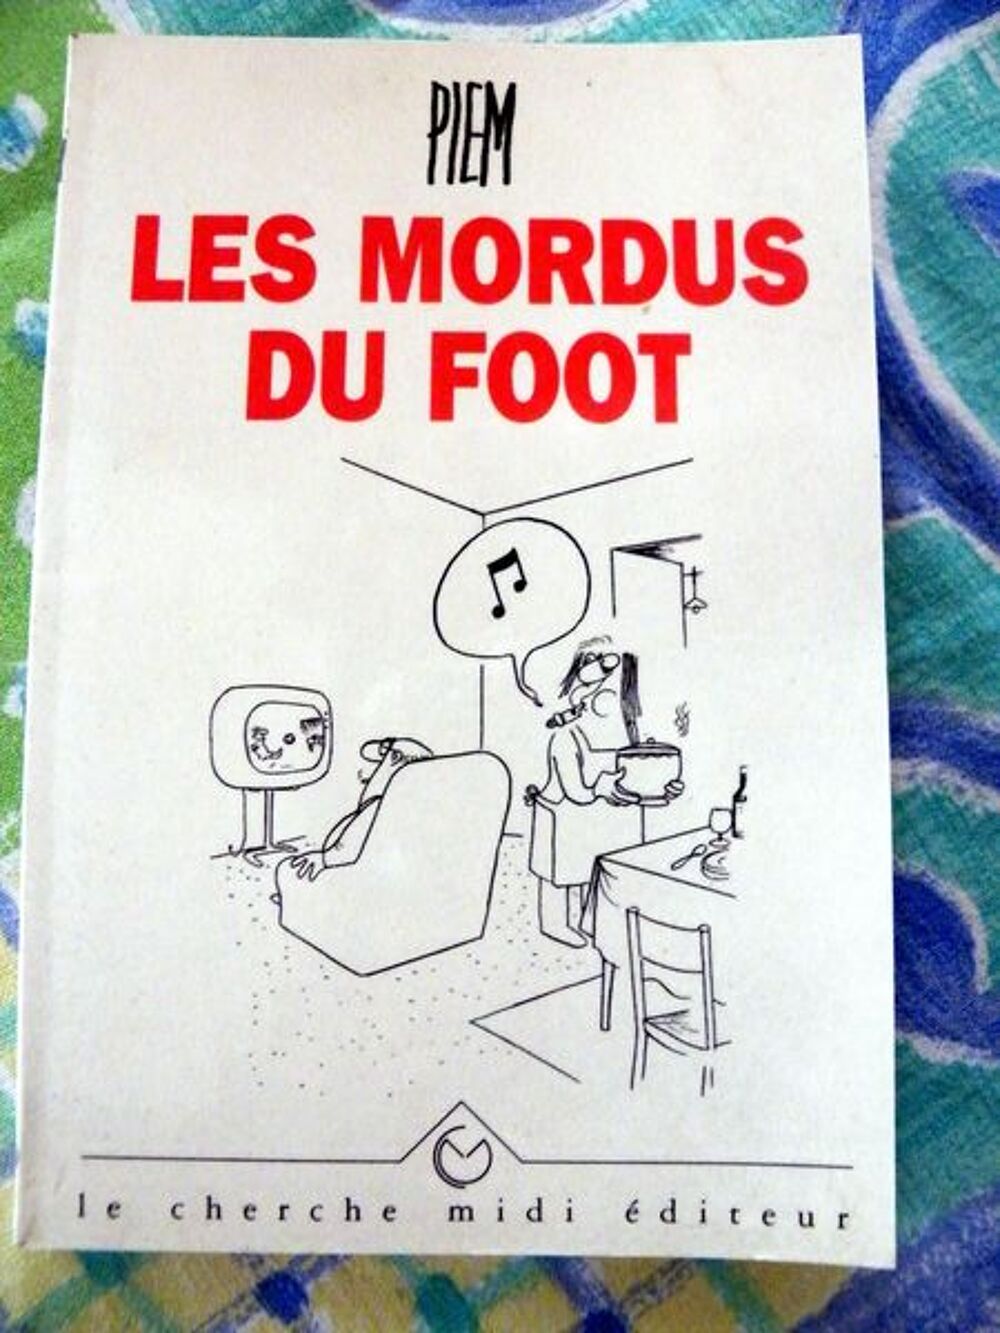 Mordus (Les) Du Foot
Livres et BD